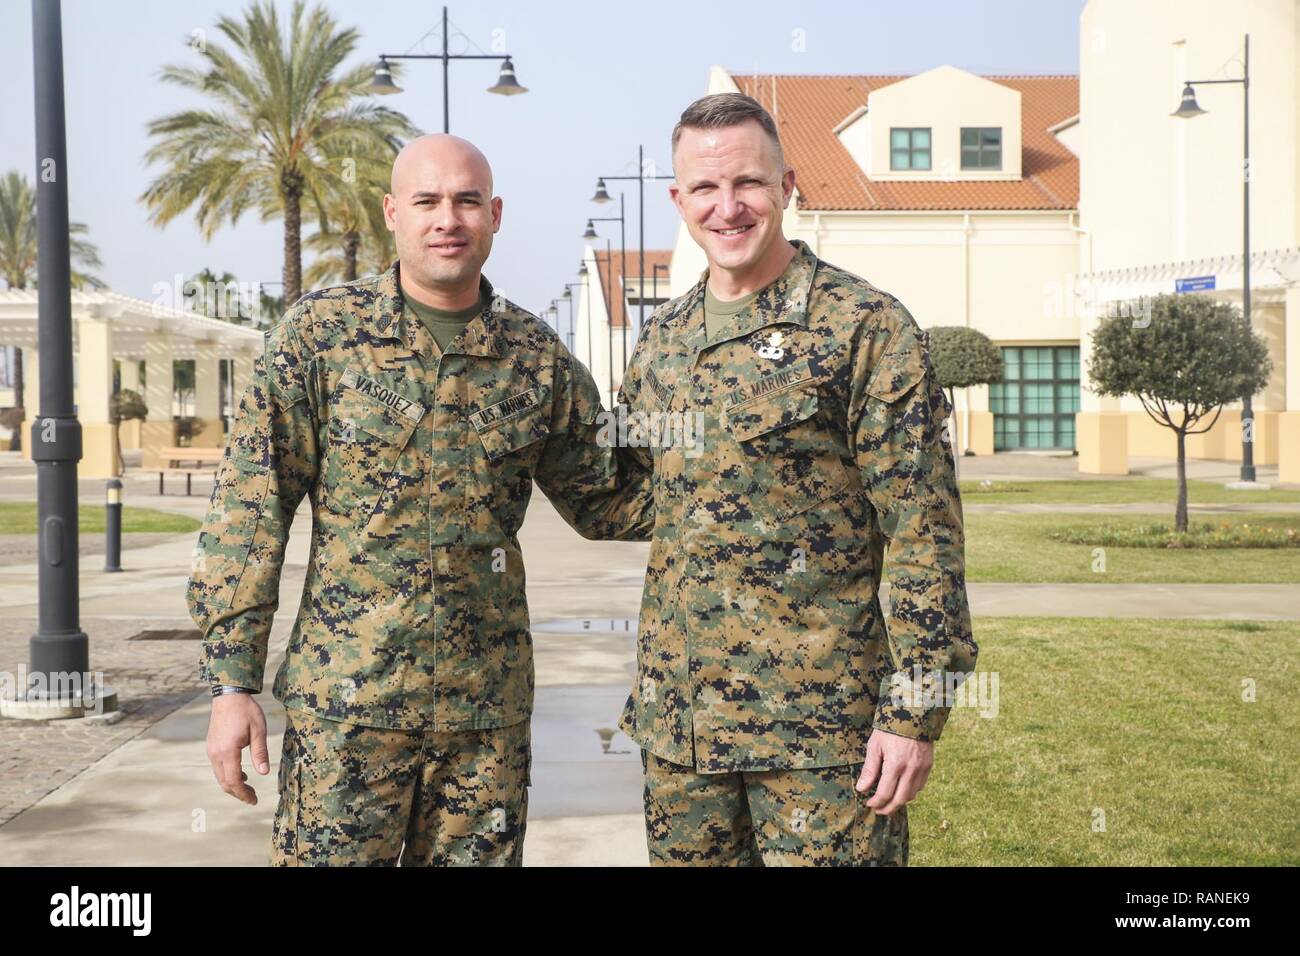 Le sergent d'artillerie. Juan Vasquez Jr., gauche, un U.S. Marine affectés  à des fins spéciales du Groupe de travail air-sol marin - Afrique -  Intervention en cas de crise, pose pour une